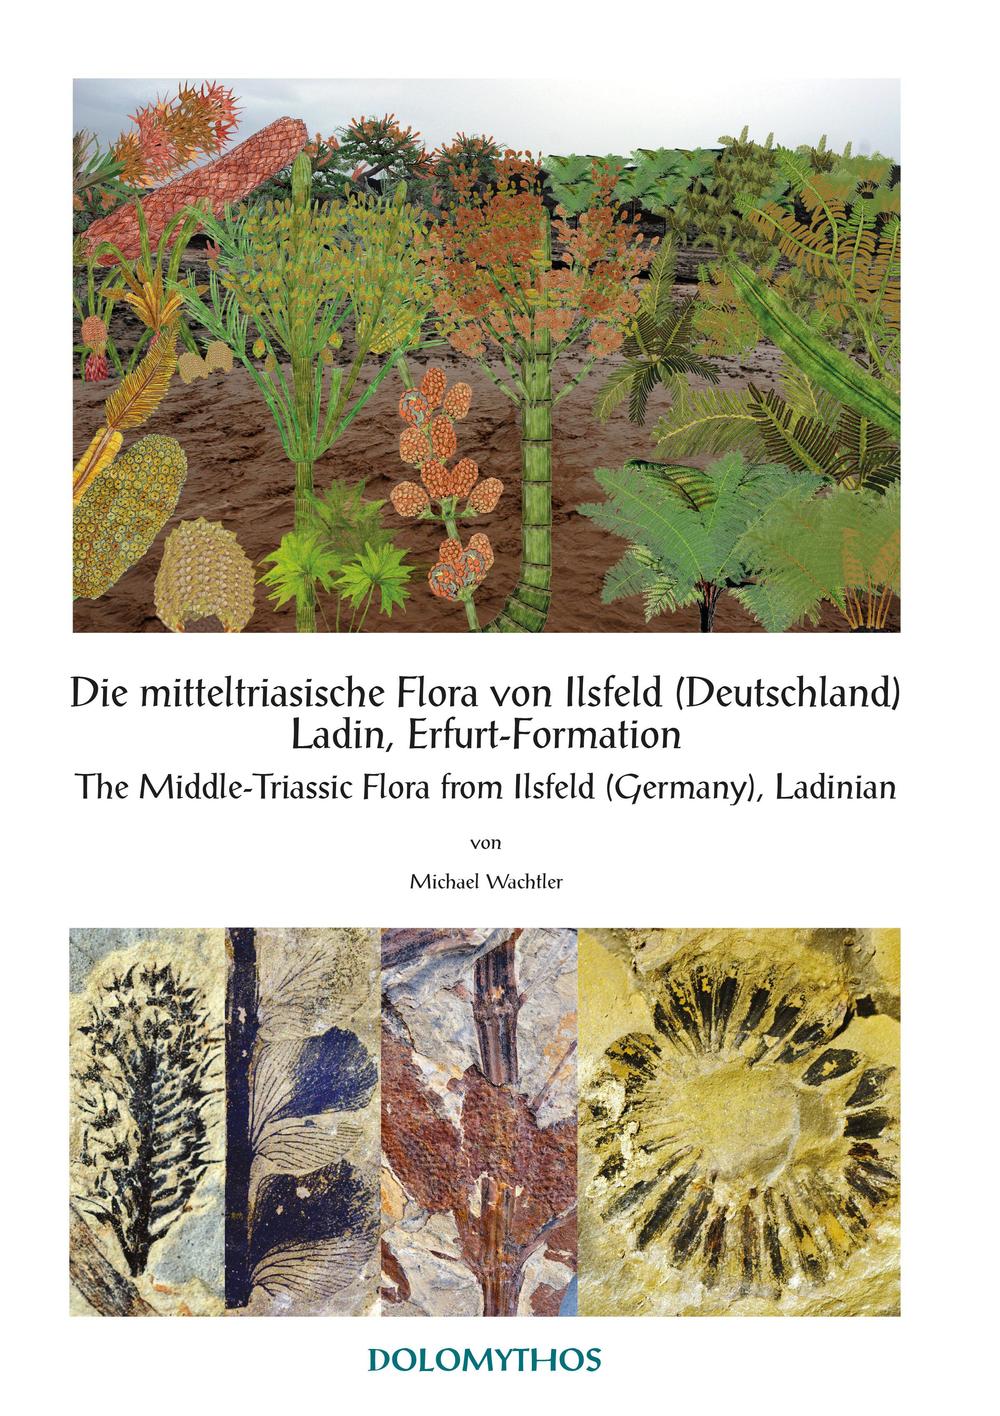 Die mitteltriasische Flora von Ilsfeld (Deutschland) Ladin, Erfurt-Formation-The Middle-Triassic Flora from Ilsfeld (Germany), Ladinian. Ediz. bilingue